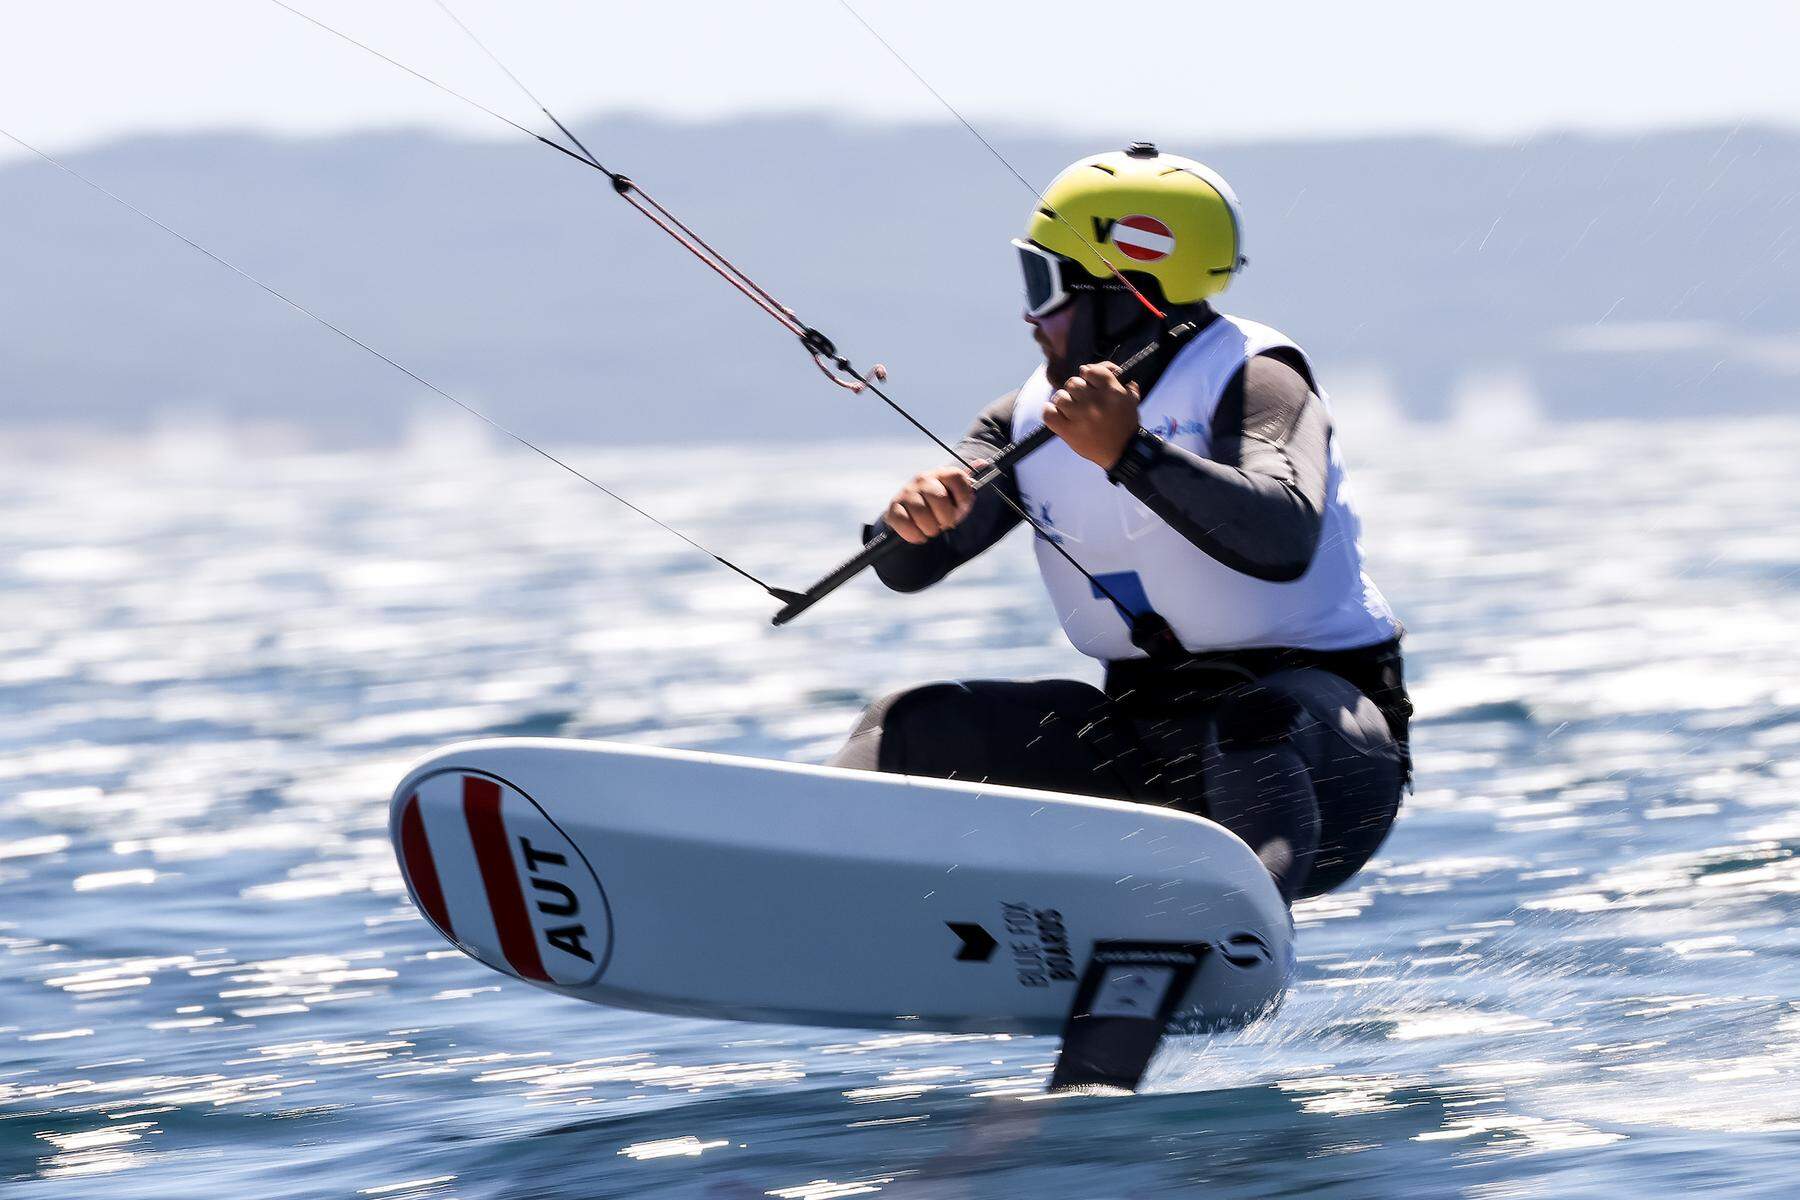 Bei Olympia fliegt Valentin Bontus mit dem Kite fast auf dem Wasser